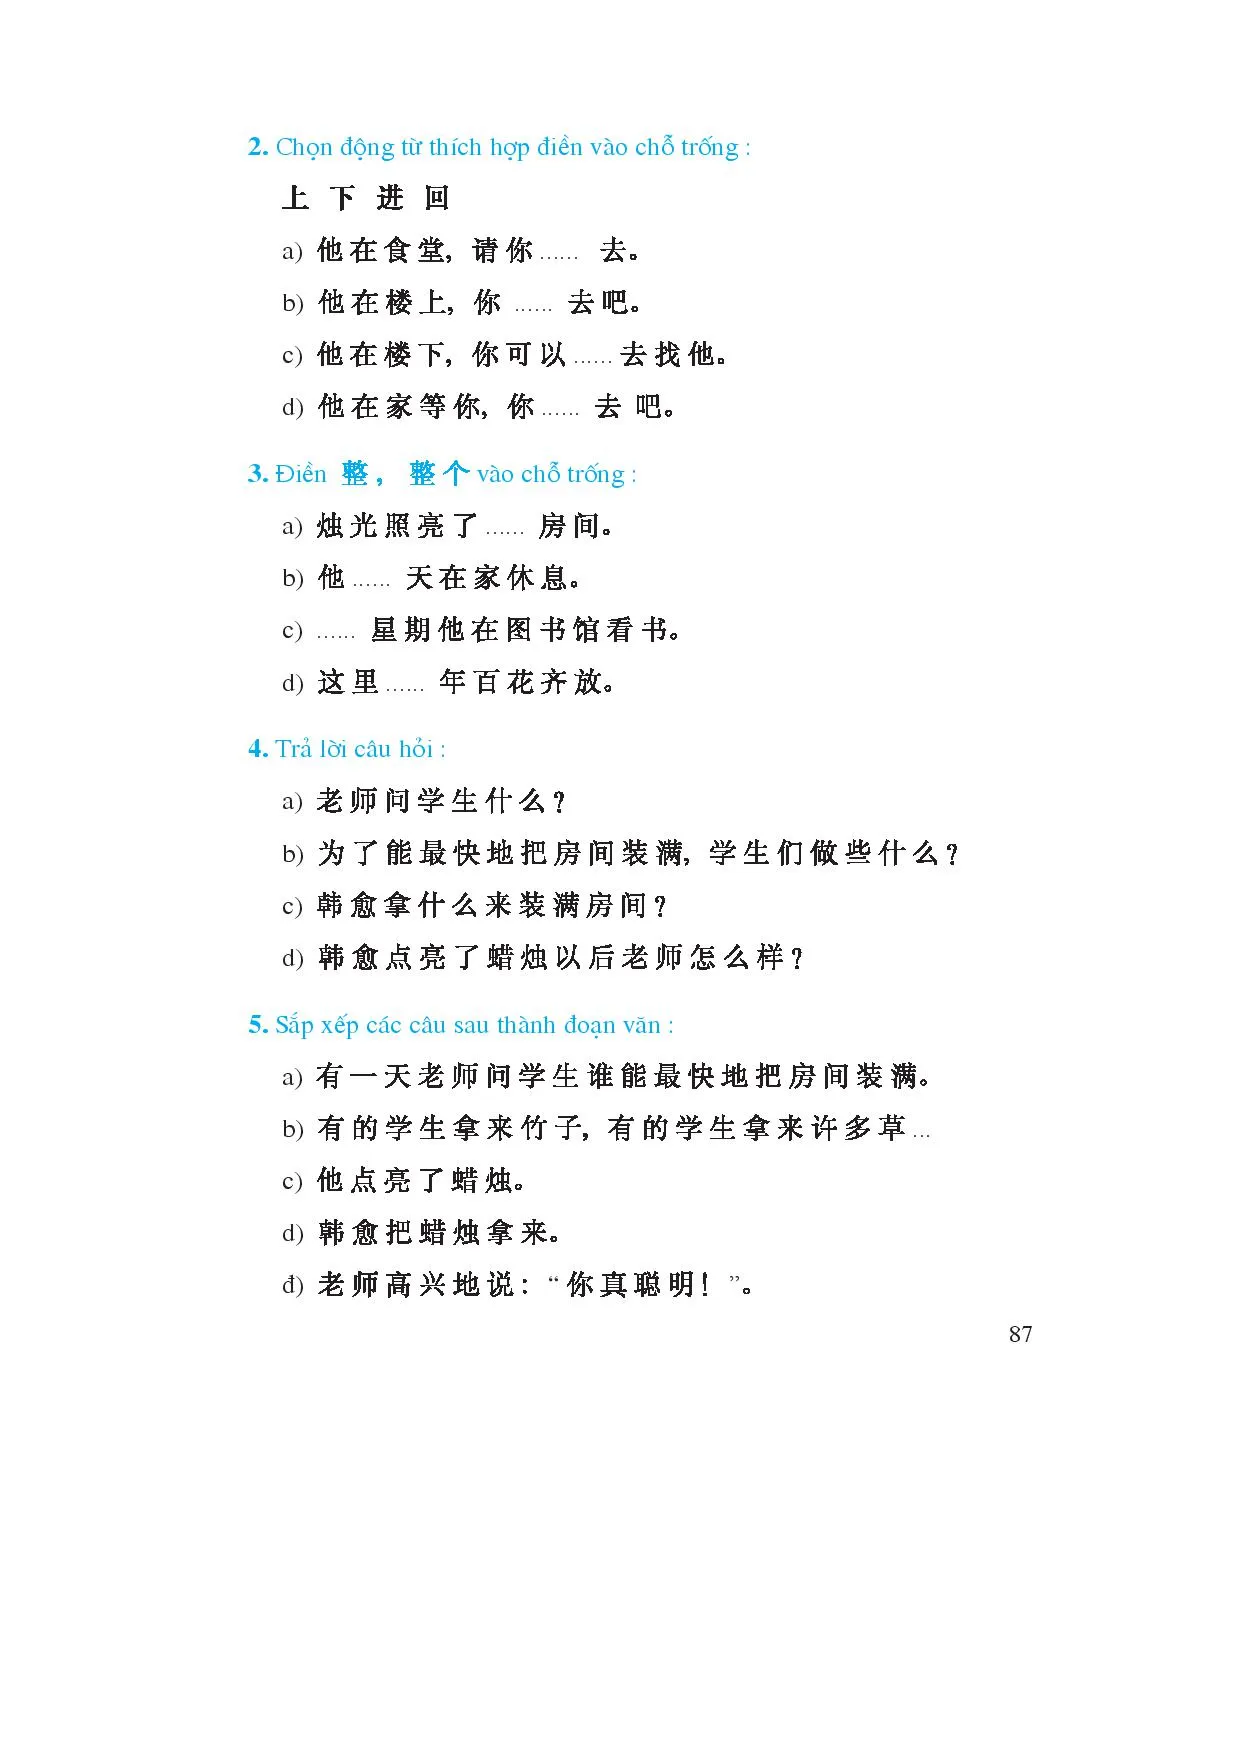 Bài 19: 烛光. Bổ ngữ xu hướng đơn (2)